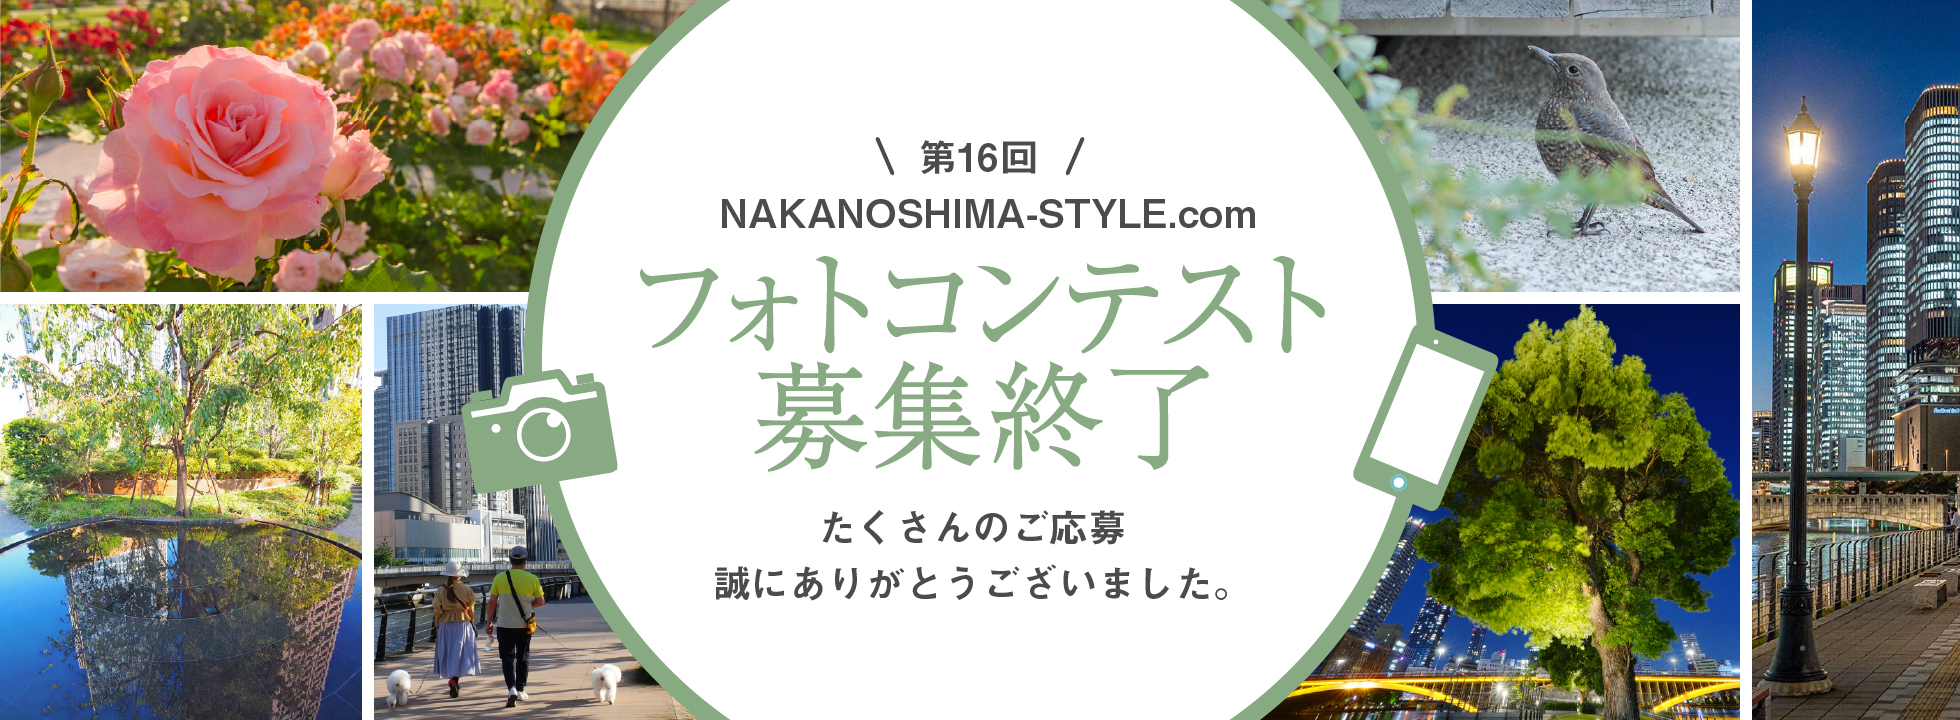 第16回フォトコンテスト 中之島の地域情報 サイト 中之島スタイル Com Nakanoshima Style Com 中之島の気になるお店やイベント ビル情報をご紹介